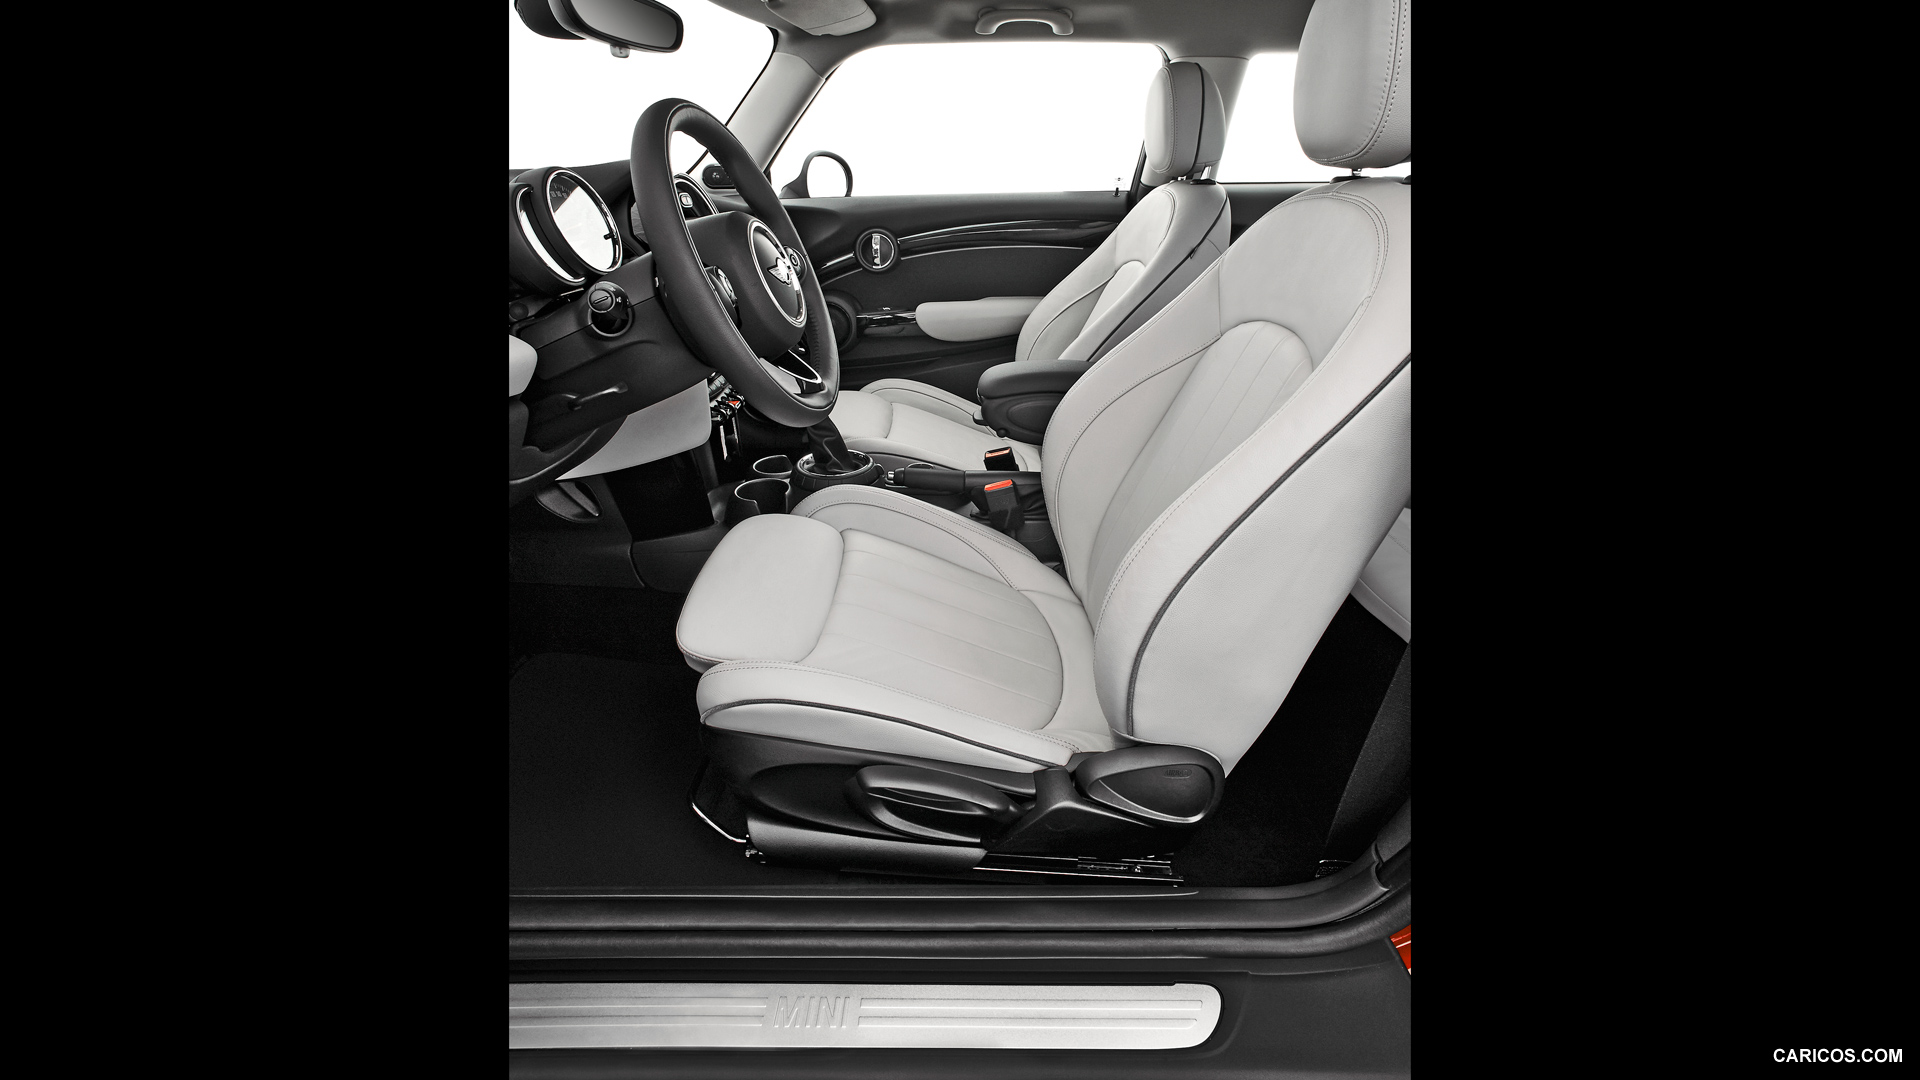 2015 MINI Cooper  - Interior, #86 of 280